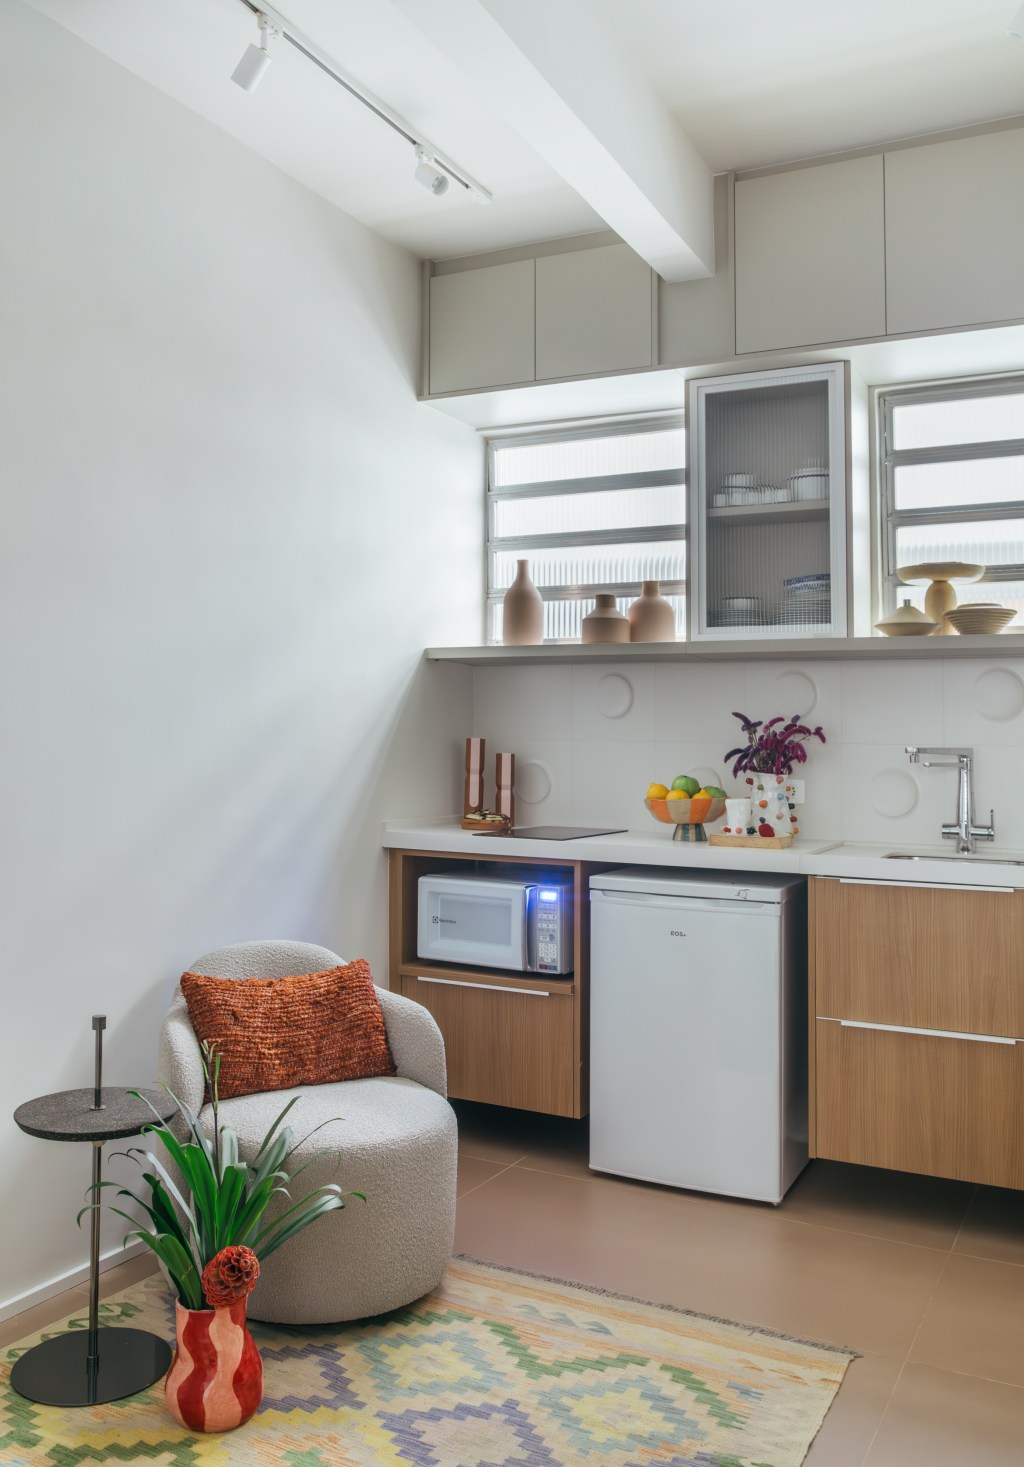 Loft de 30 m² é projetado para administradora de 80 anos que mora sozinha. Projeto de Richard de Mattos, da Casa Cururu. Na foto, cozinha com armários de madeira e tampo branco.